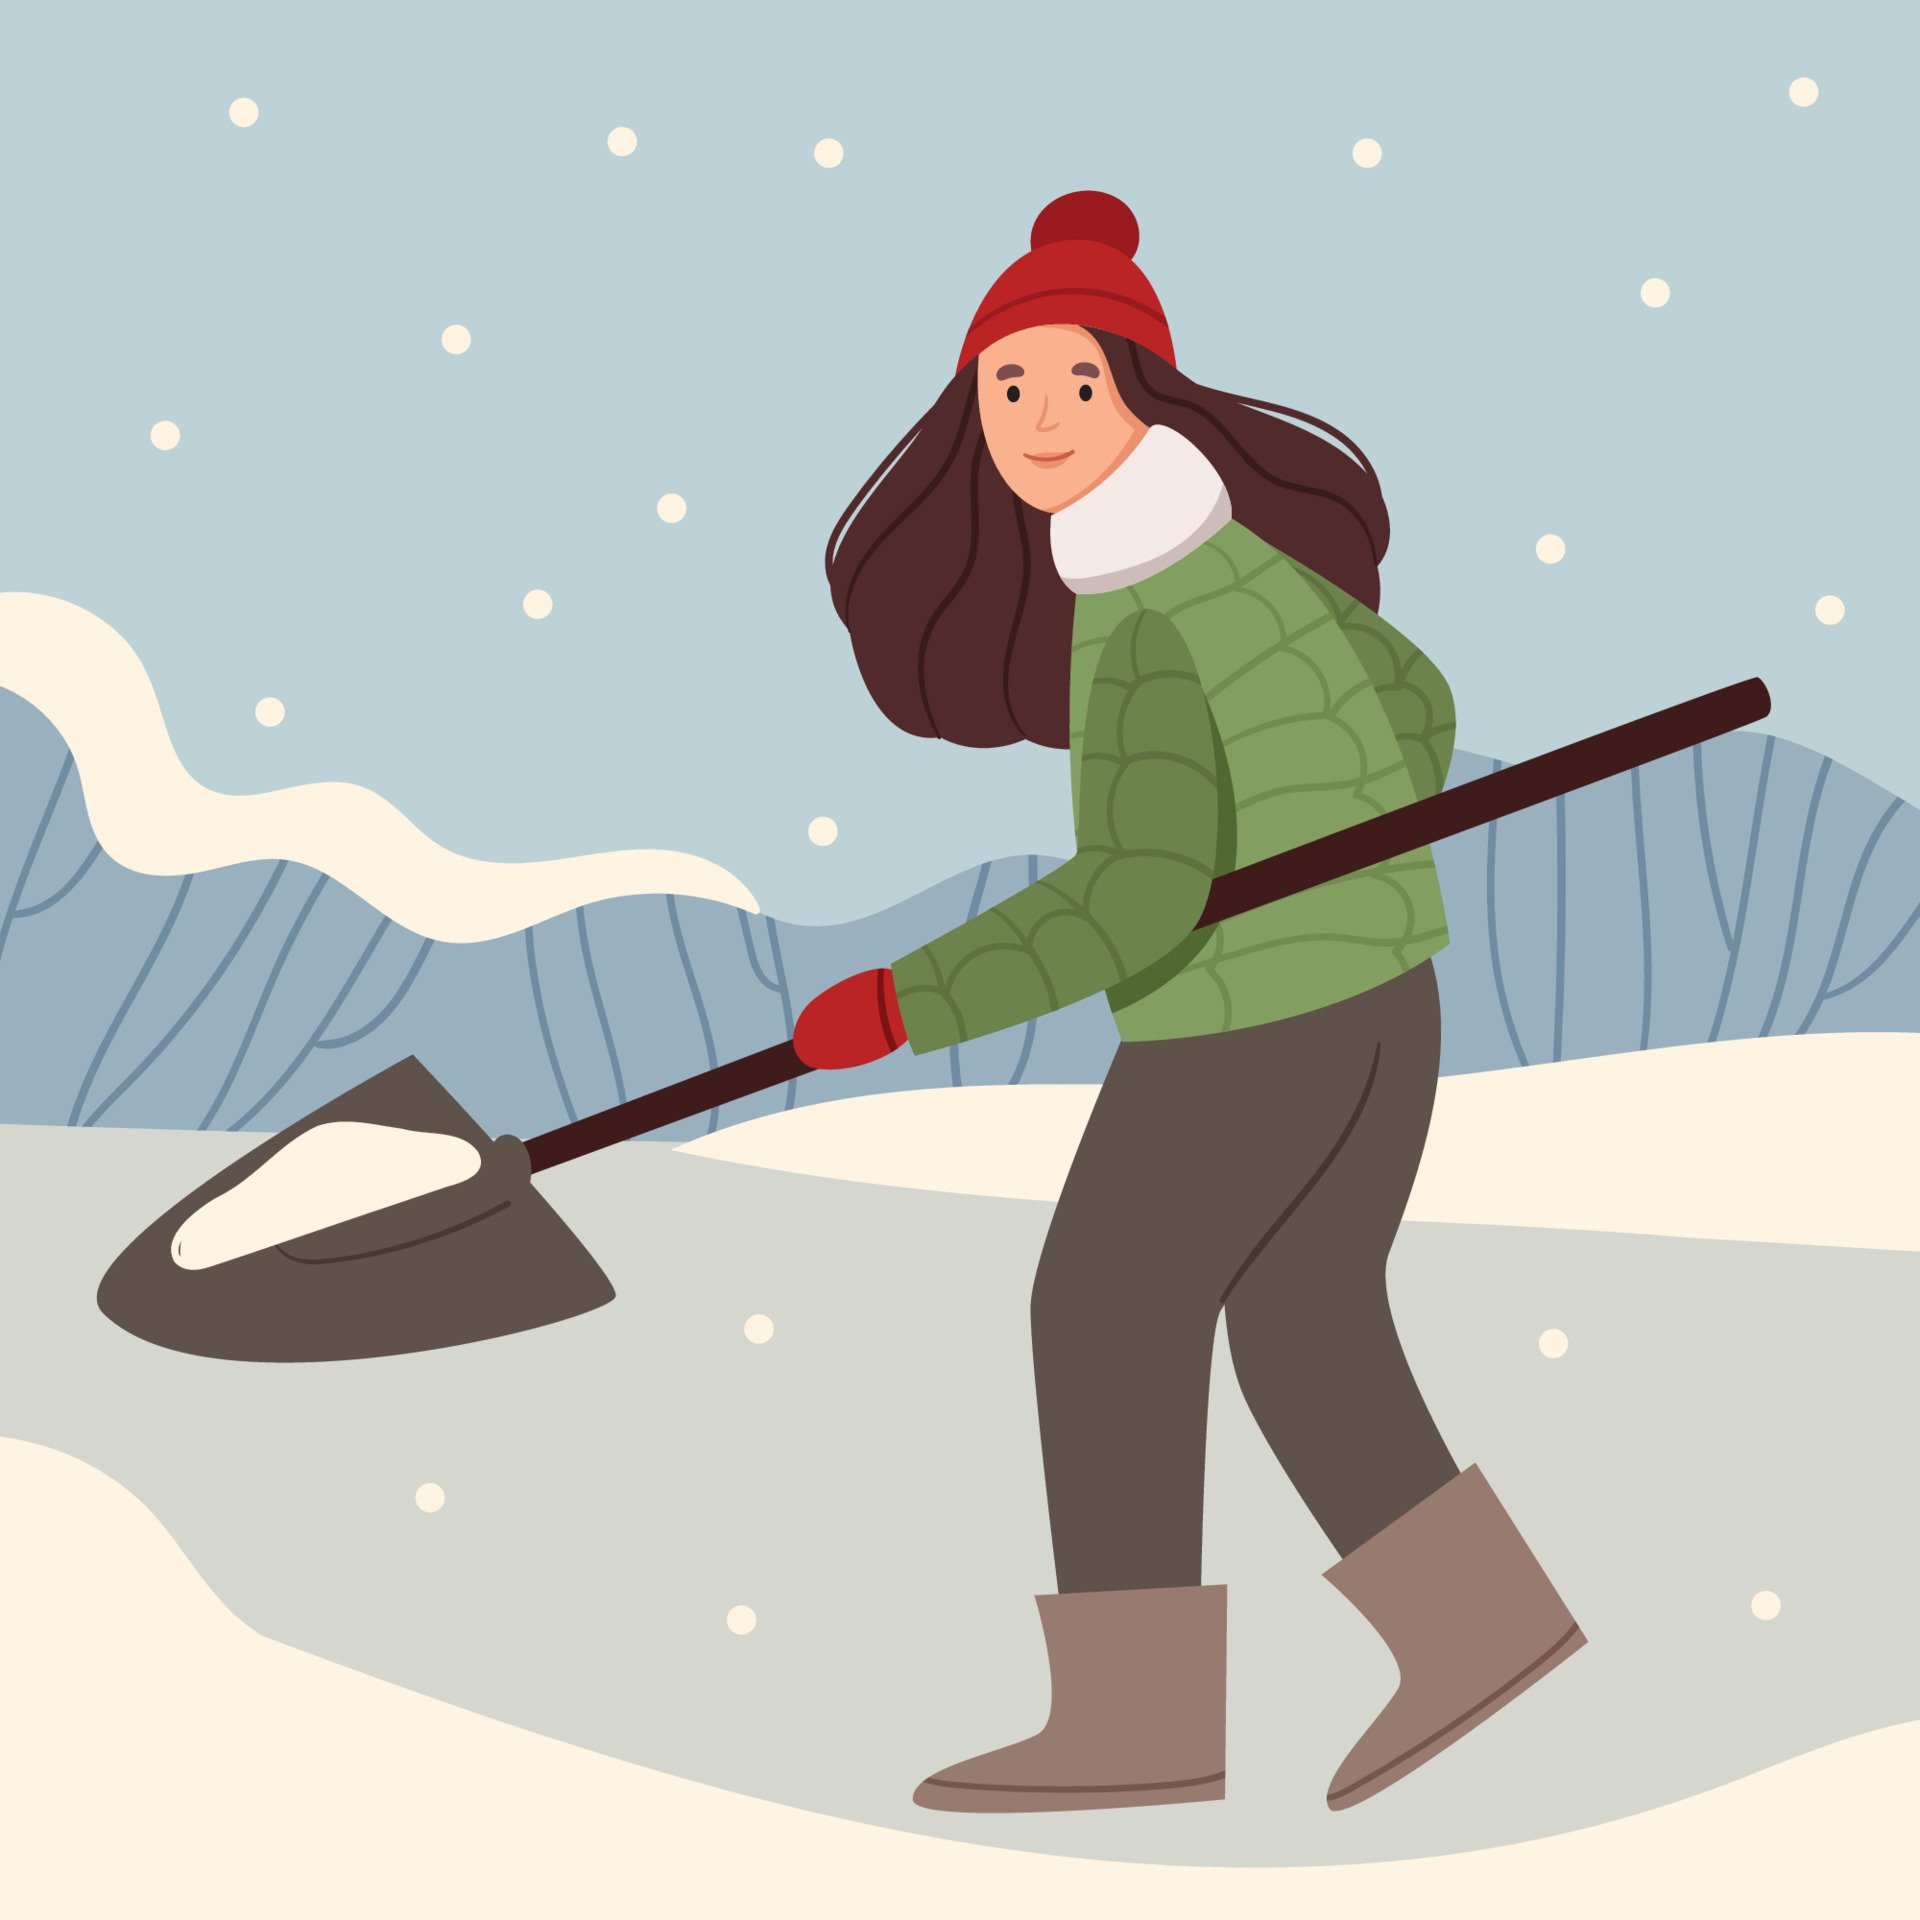 Март чистим. Девушка с лопатой зимой. Девушка чистит снег. Человек с лопатой зимой арт. Девушка с лопатой чистит снег.